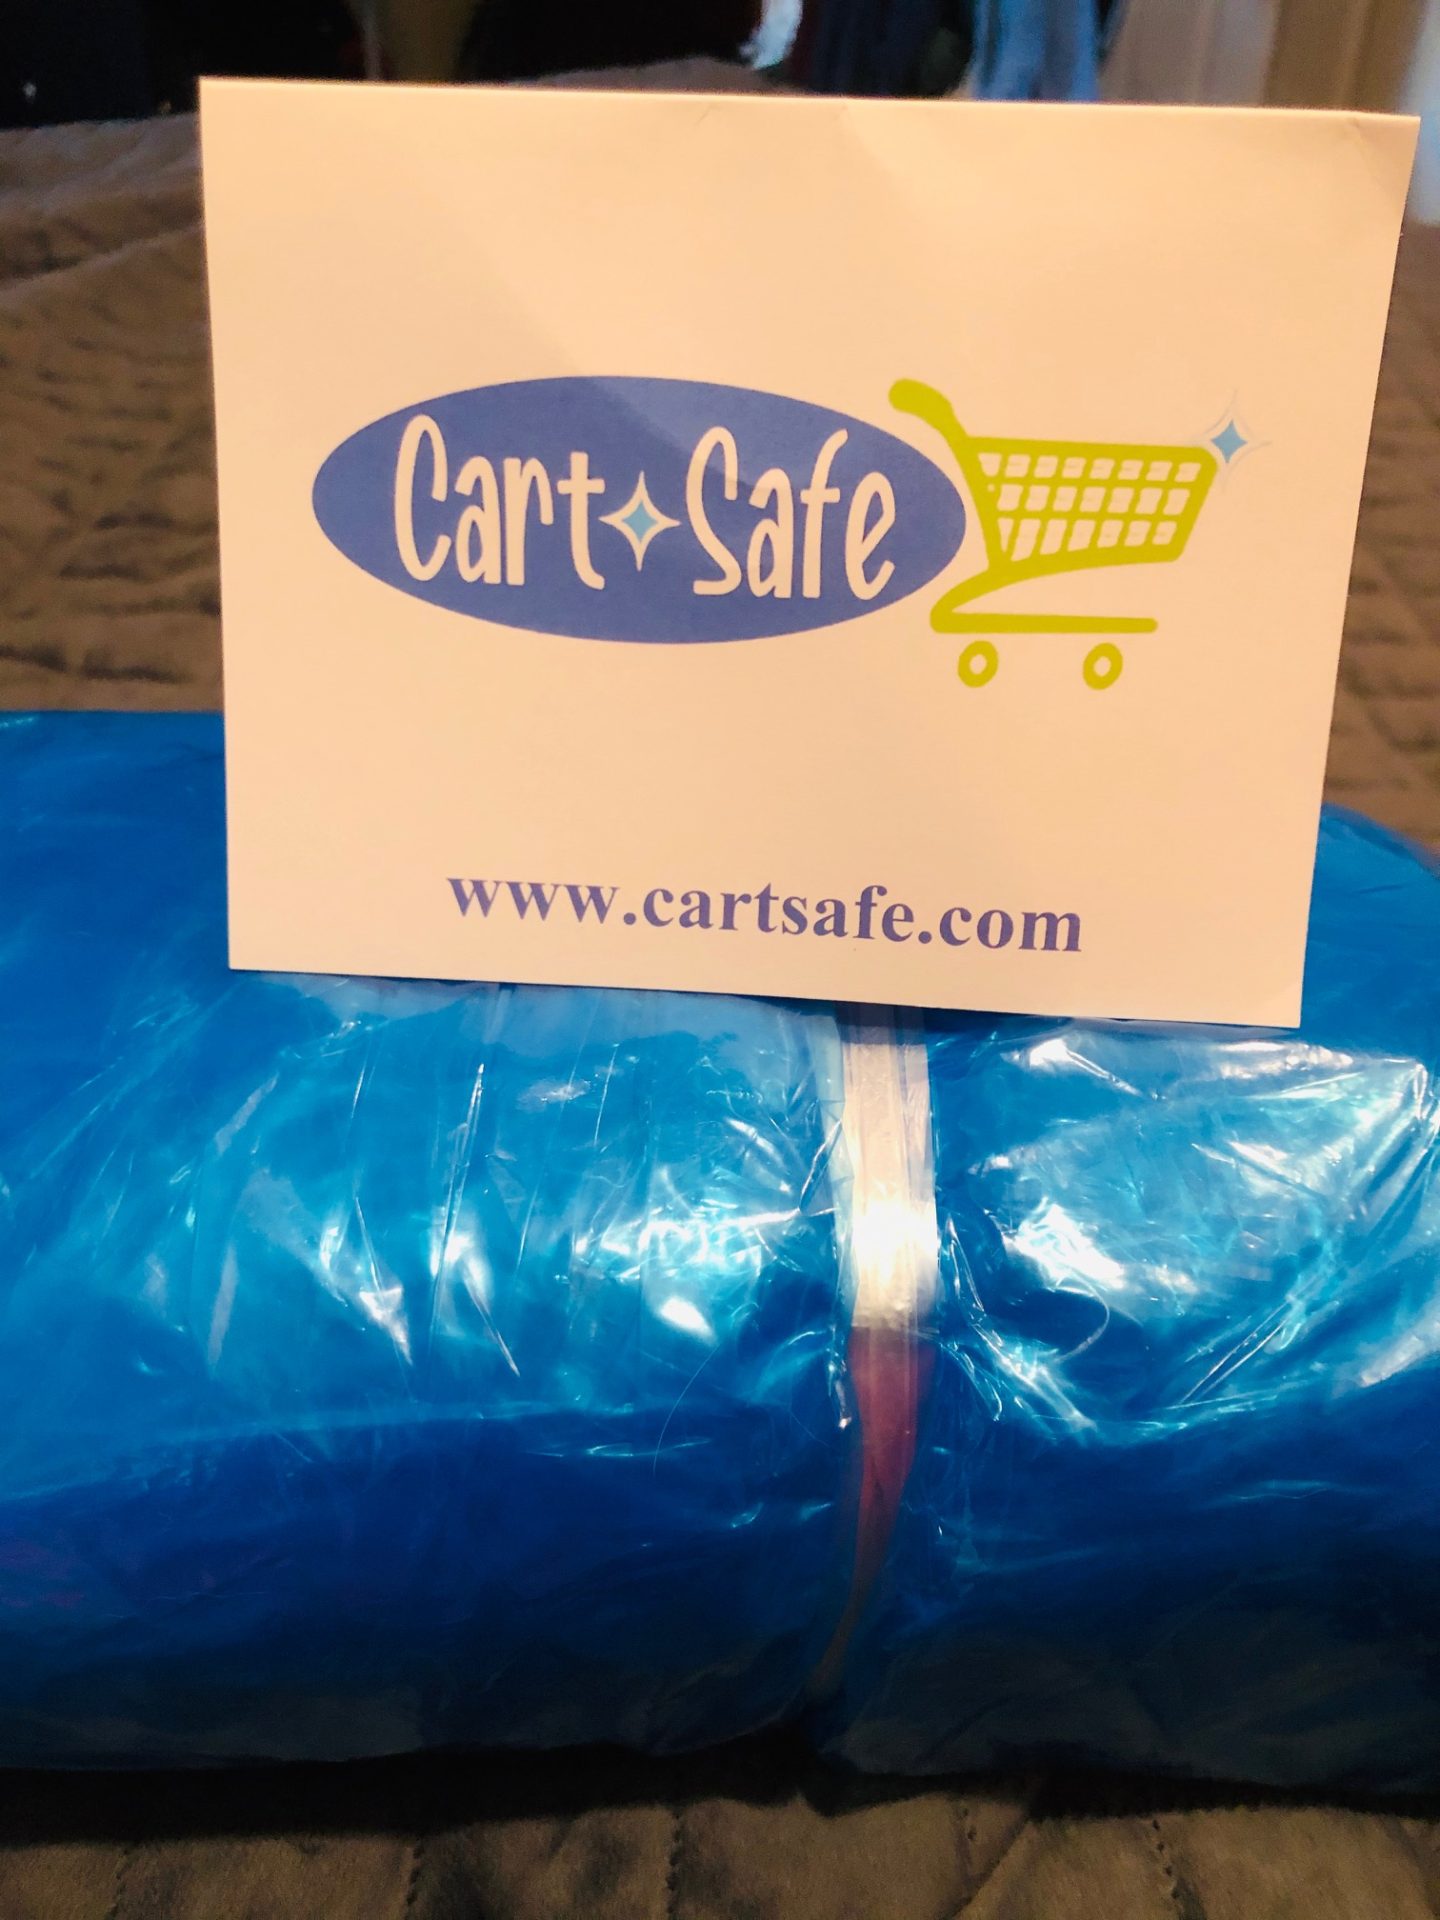 Cart safe